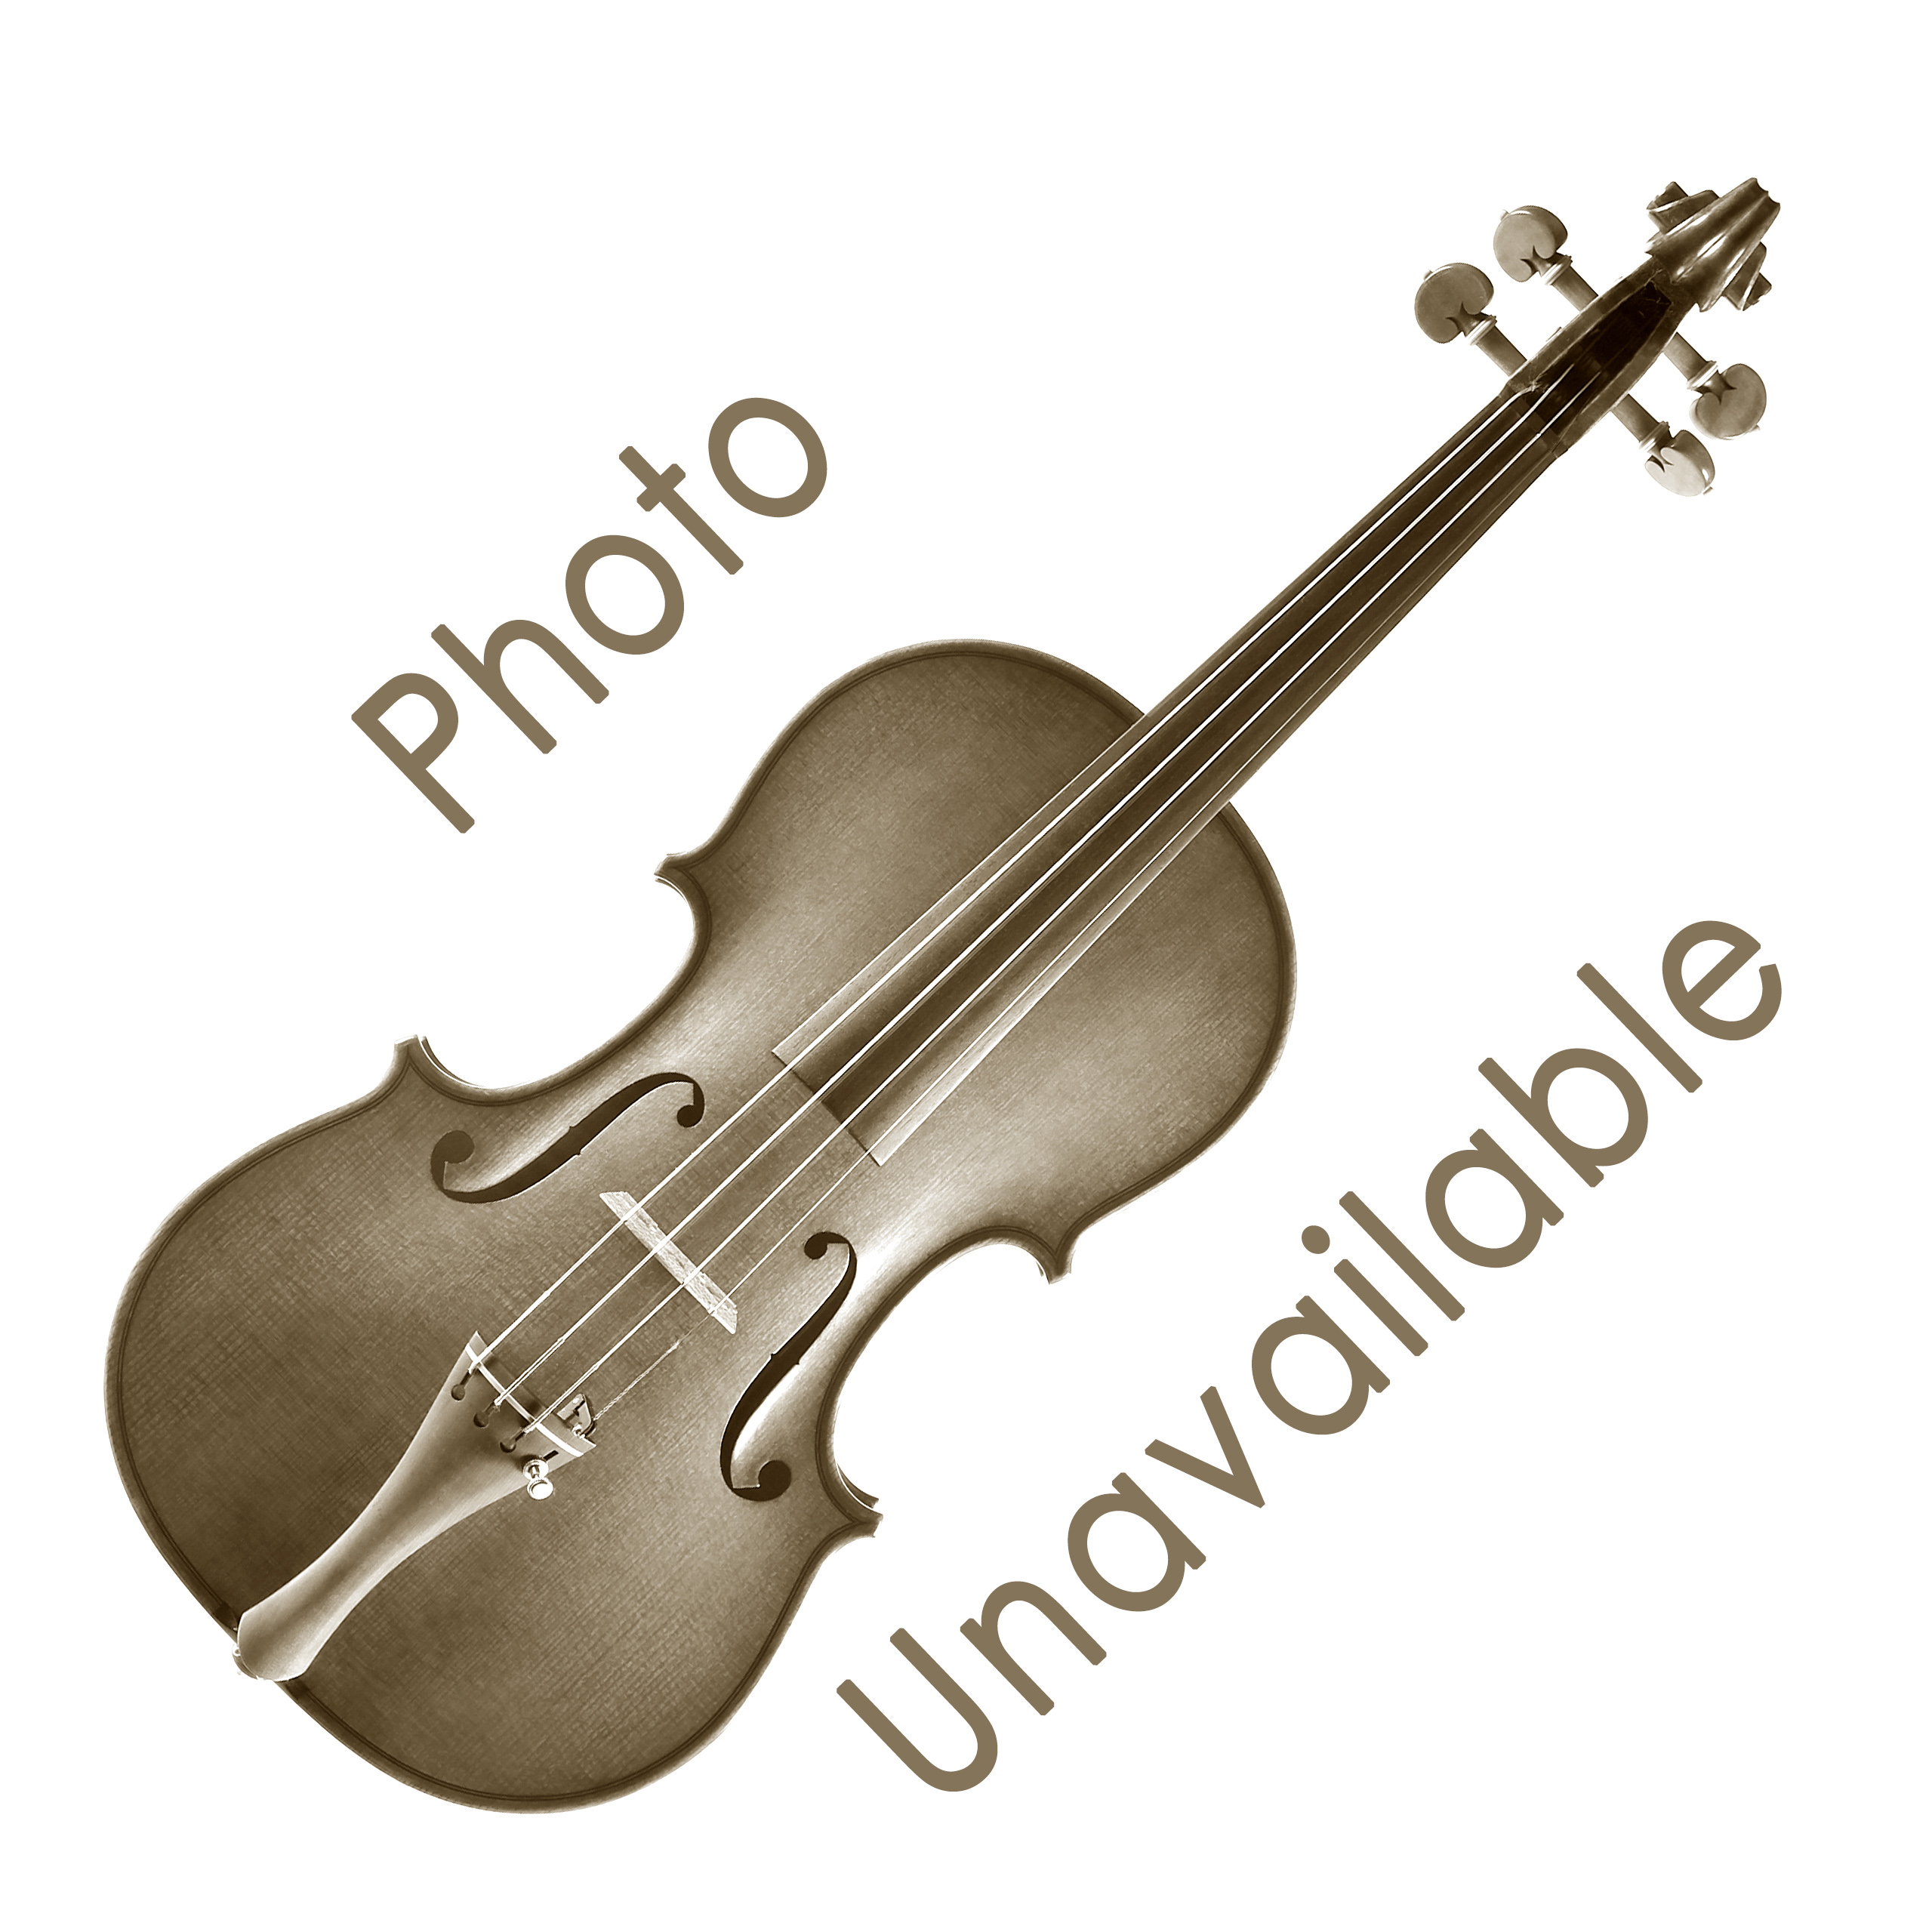 Bon Musica Shoulder Rest for Violin/Viola - Violin 1/16